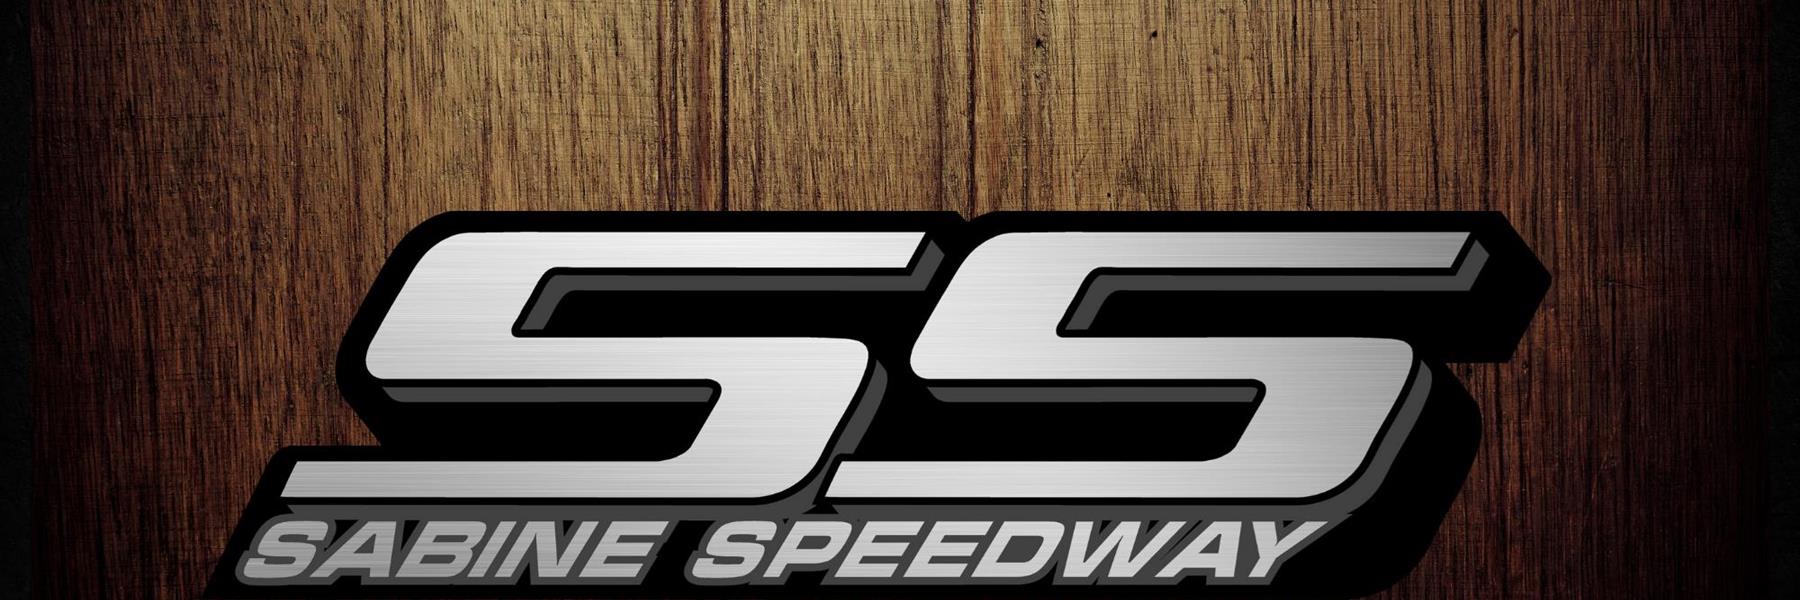 9/23/2022 - Sabine Speedway